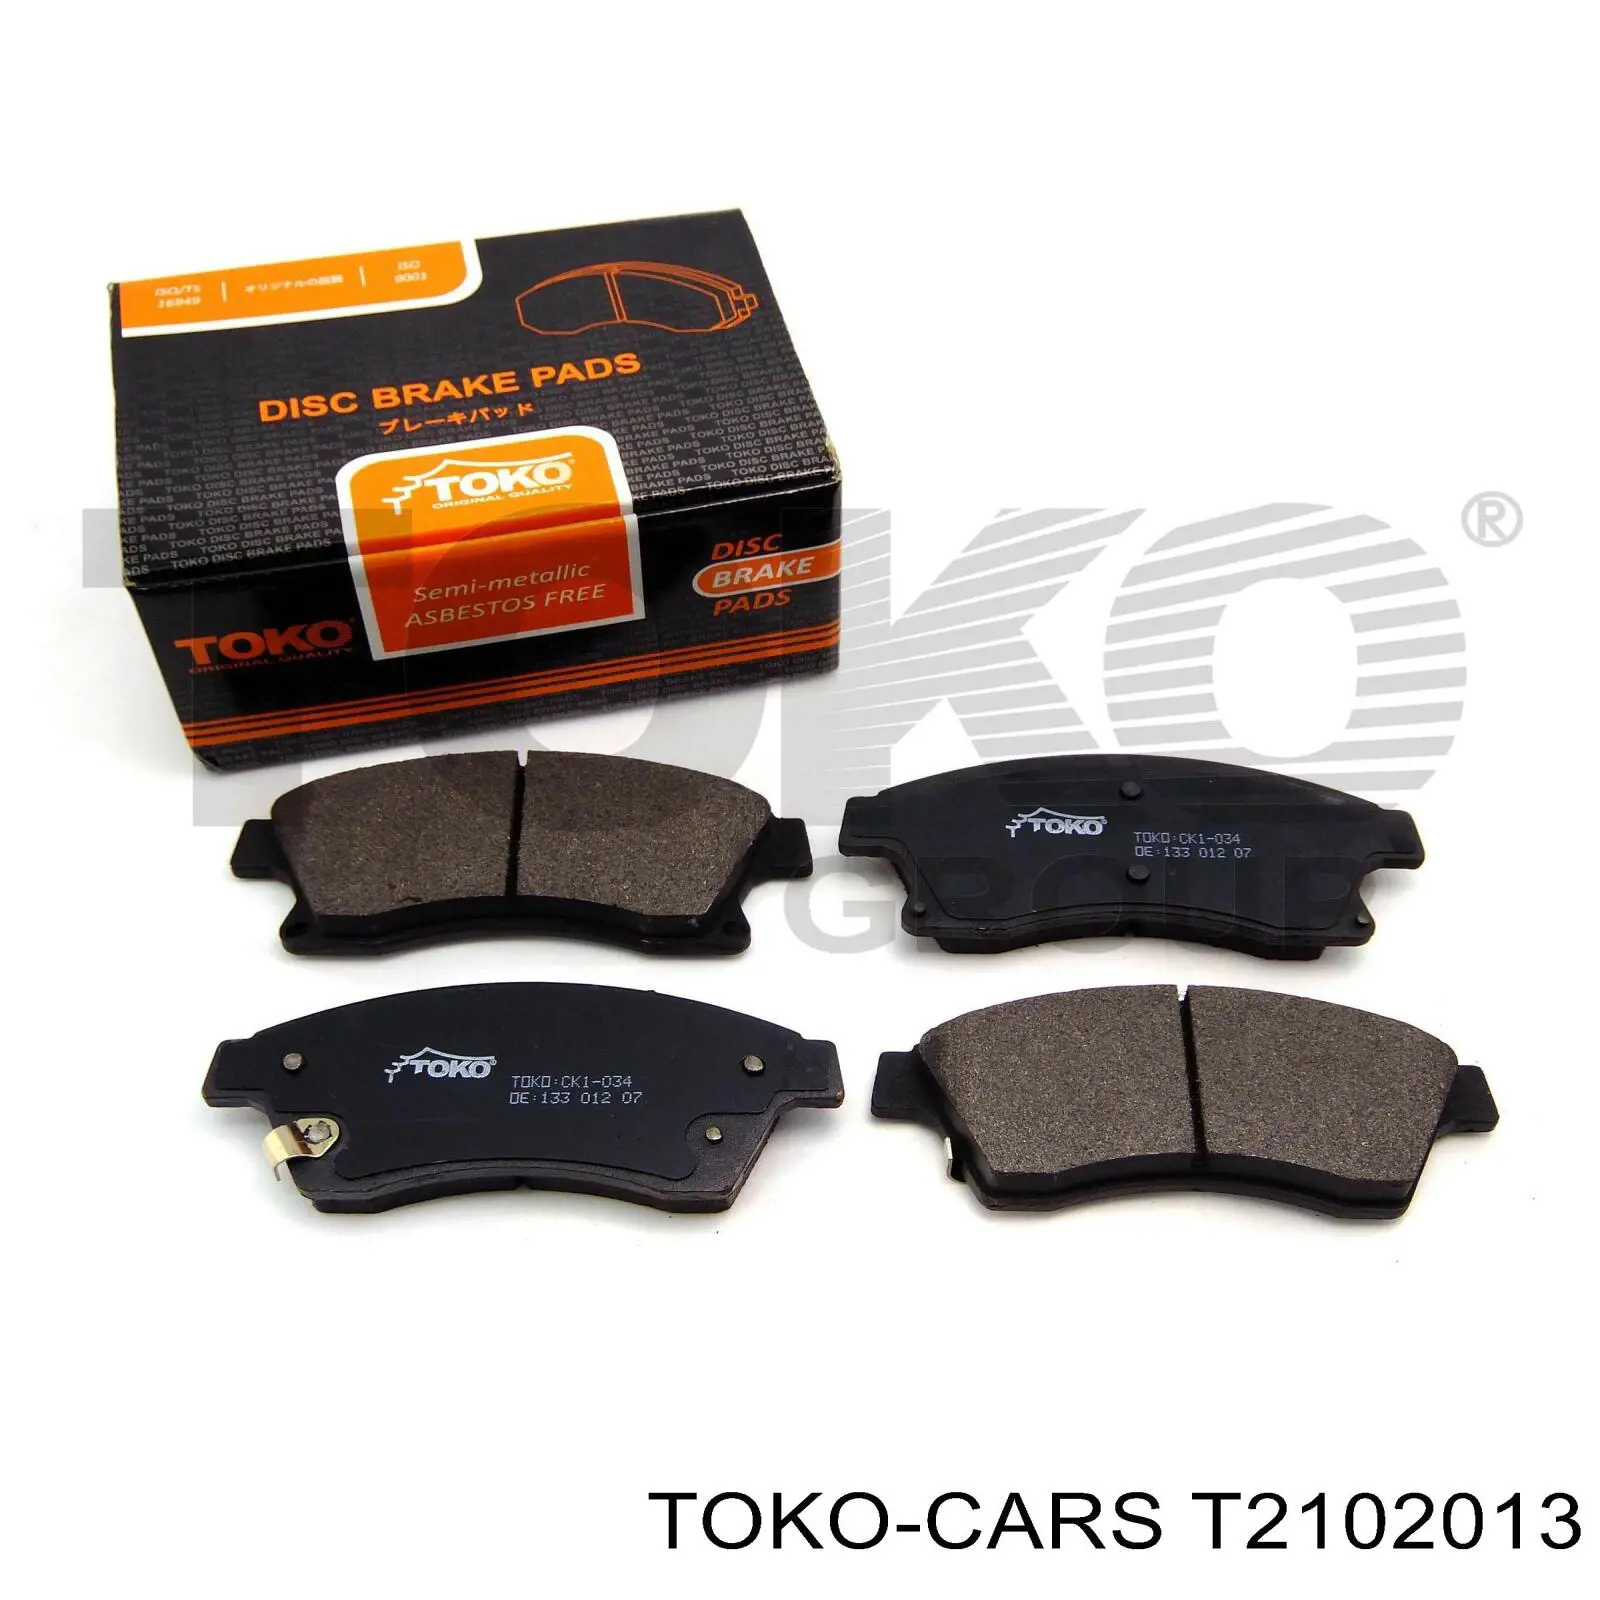 T2102013 Toko cars pastillas de freno delanteras